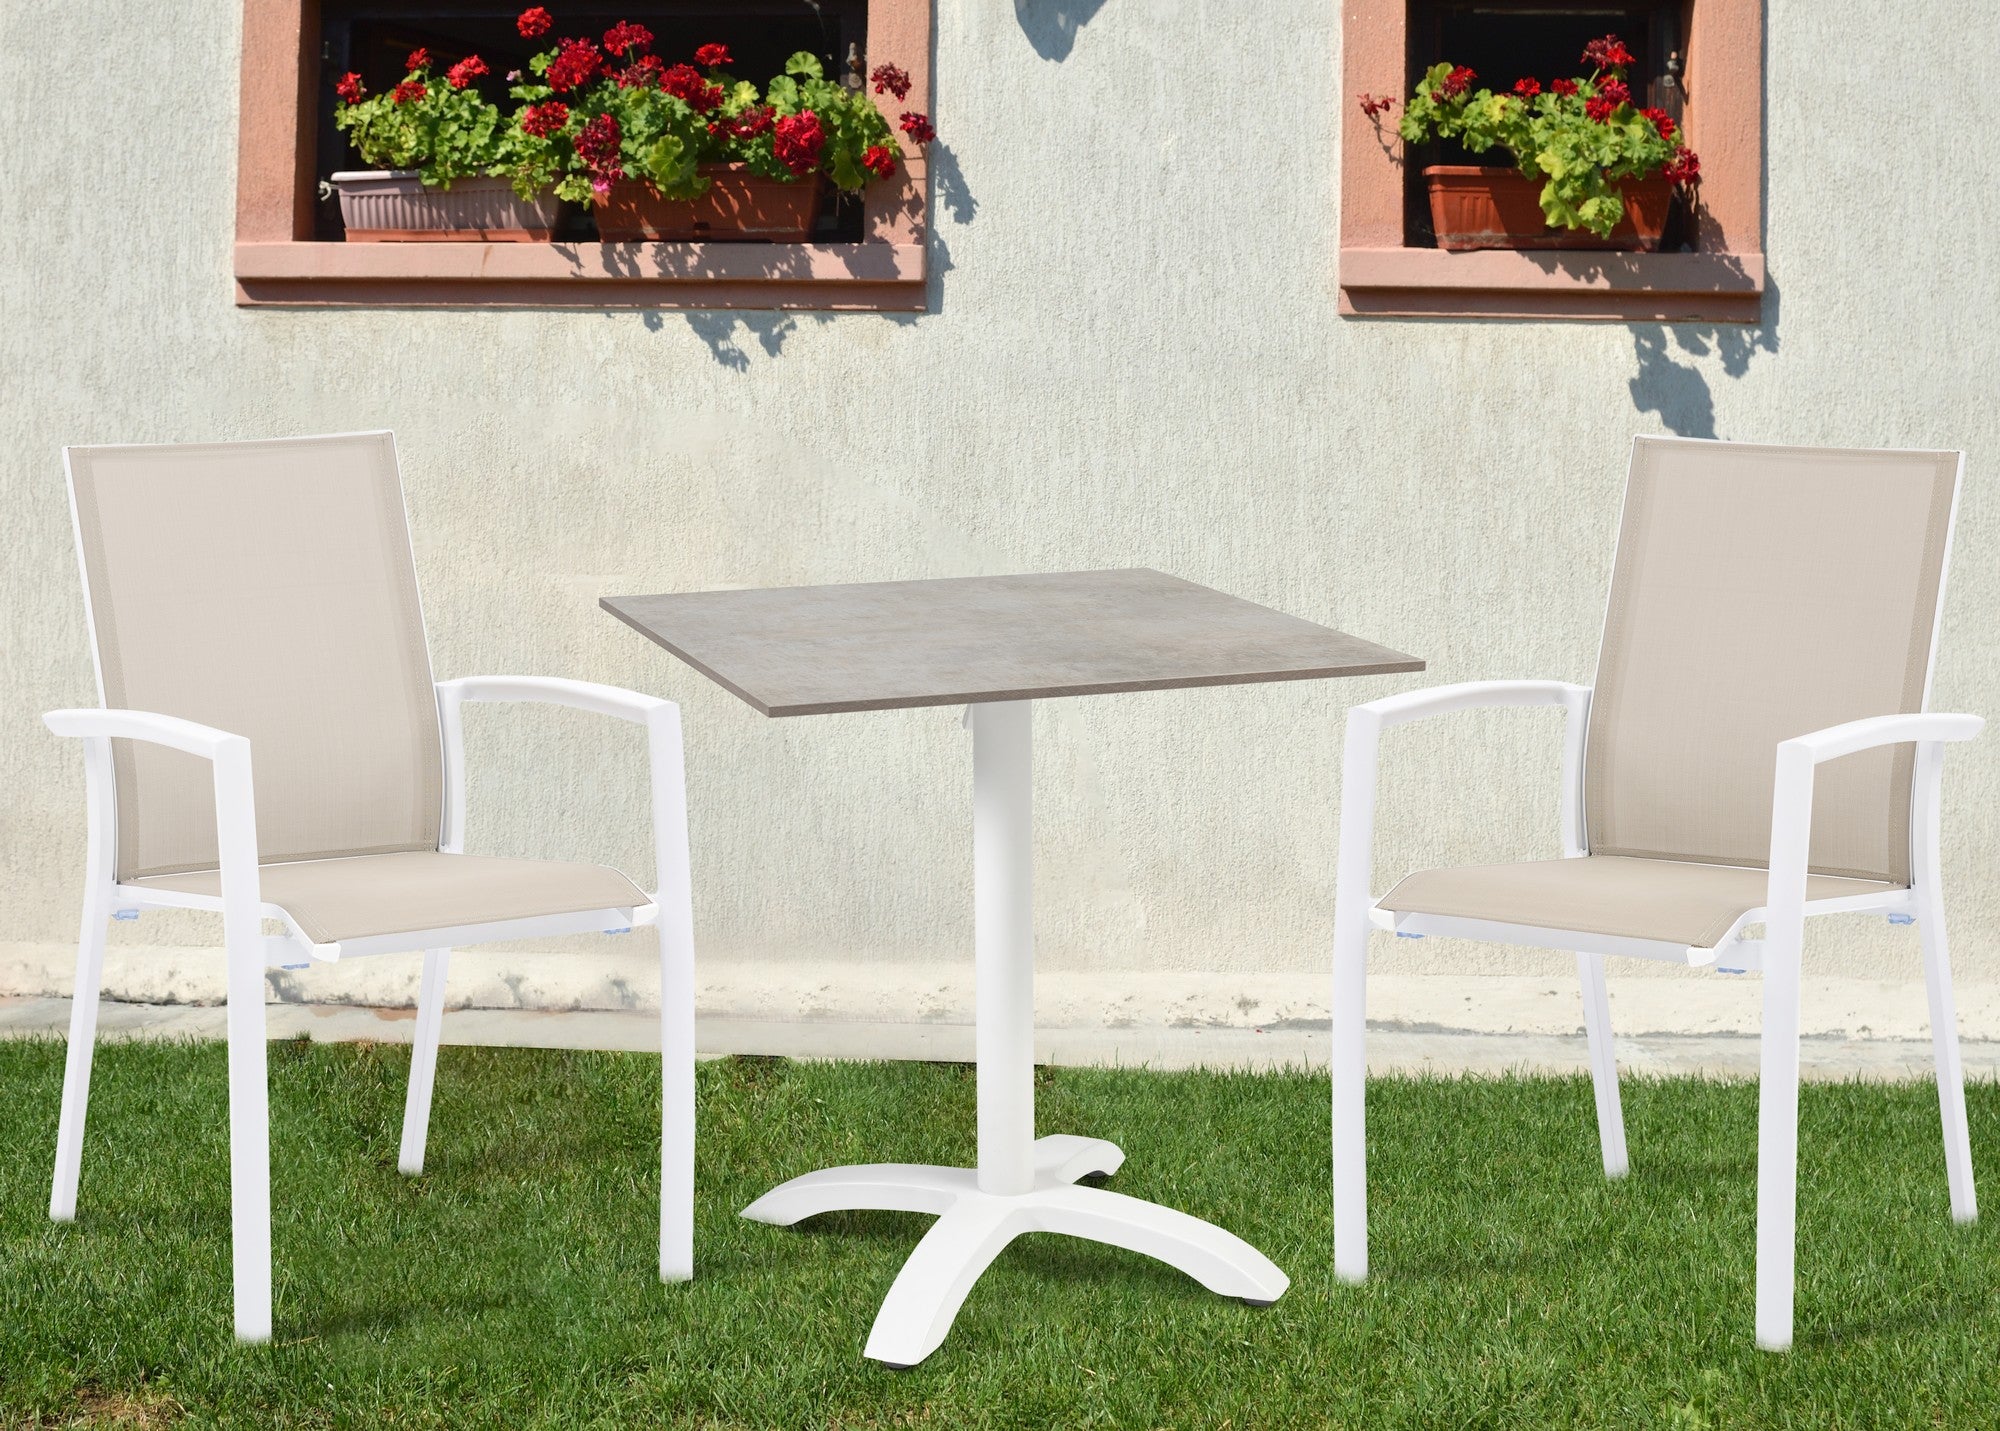 Weißer Dolly Gartenstuhl mit taupefarbener Textilenbespannung und stapelbarem Design, erhältlich bei Gartenmöbelshop.at.